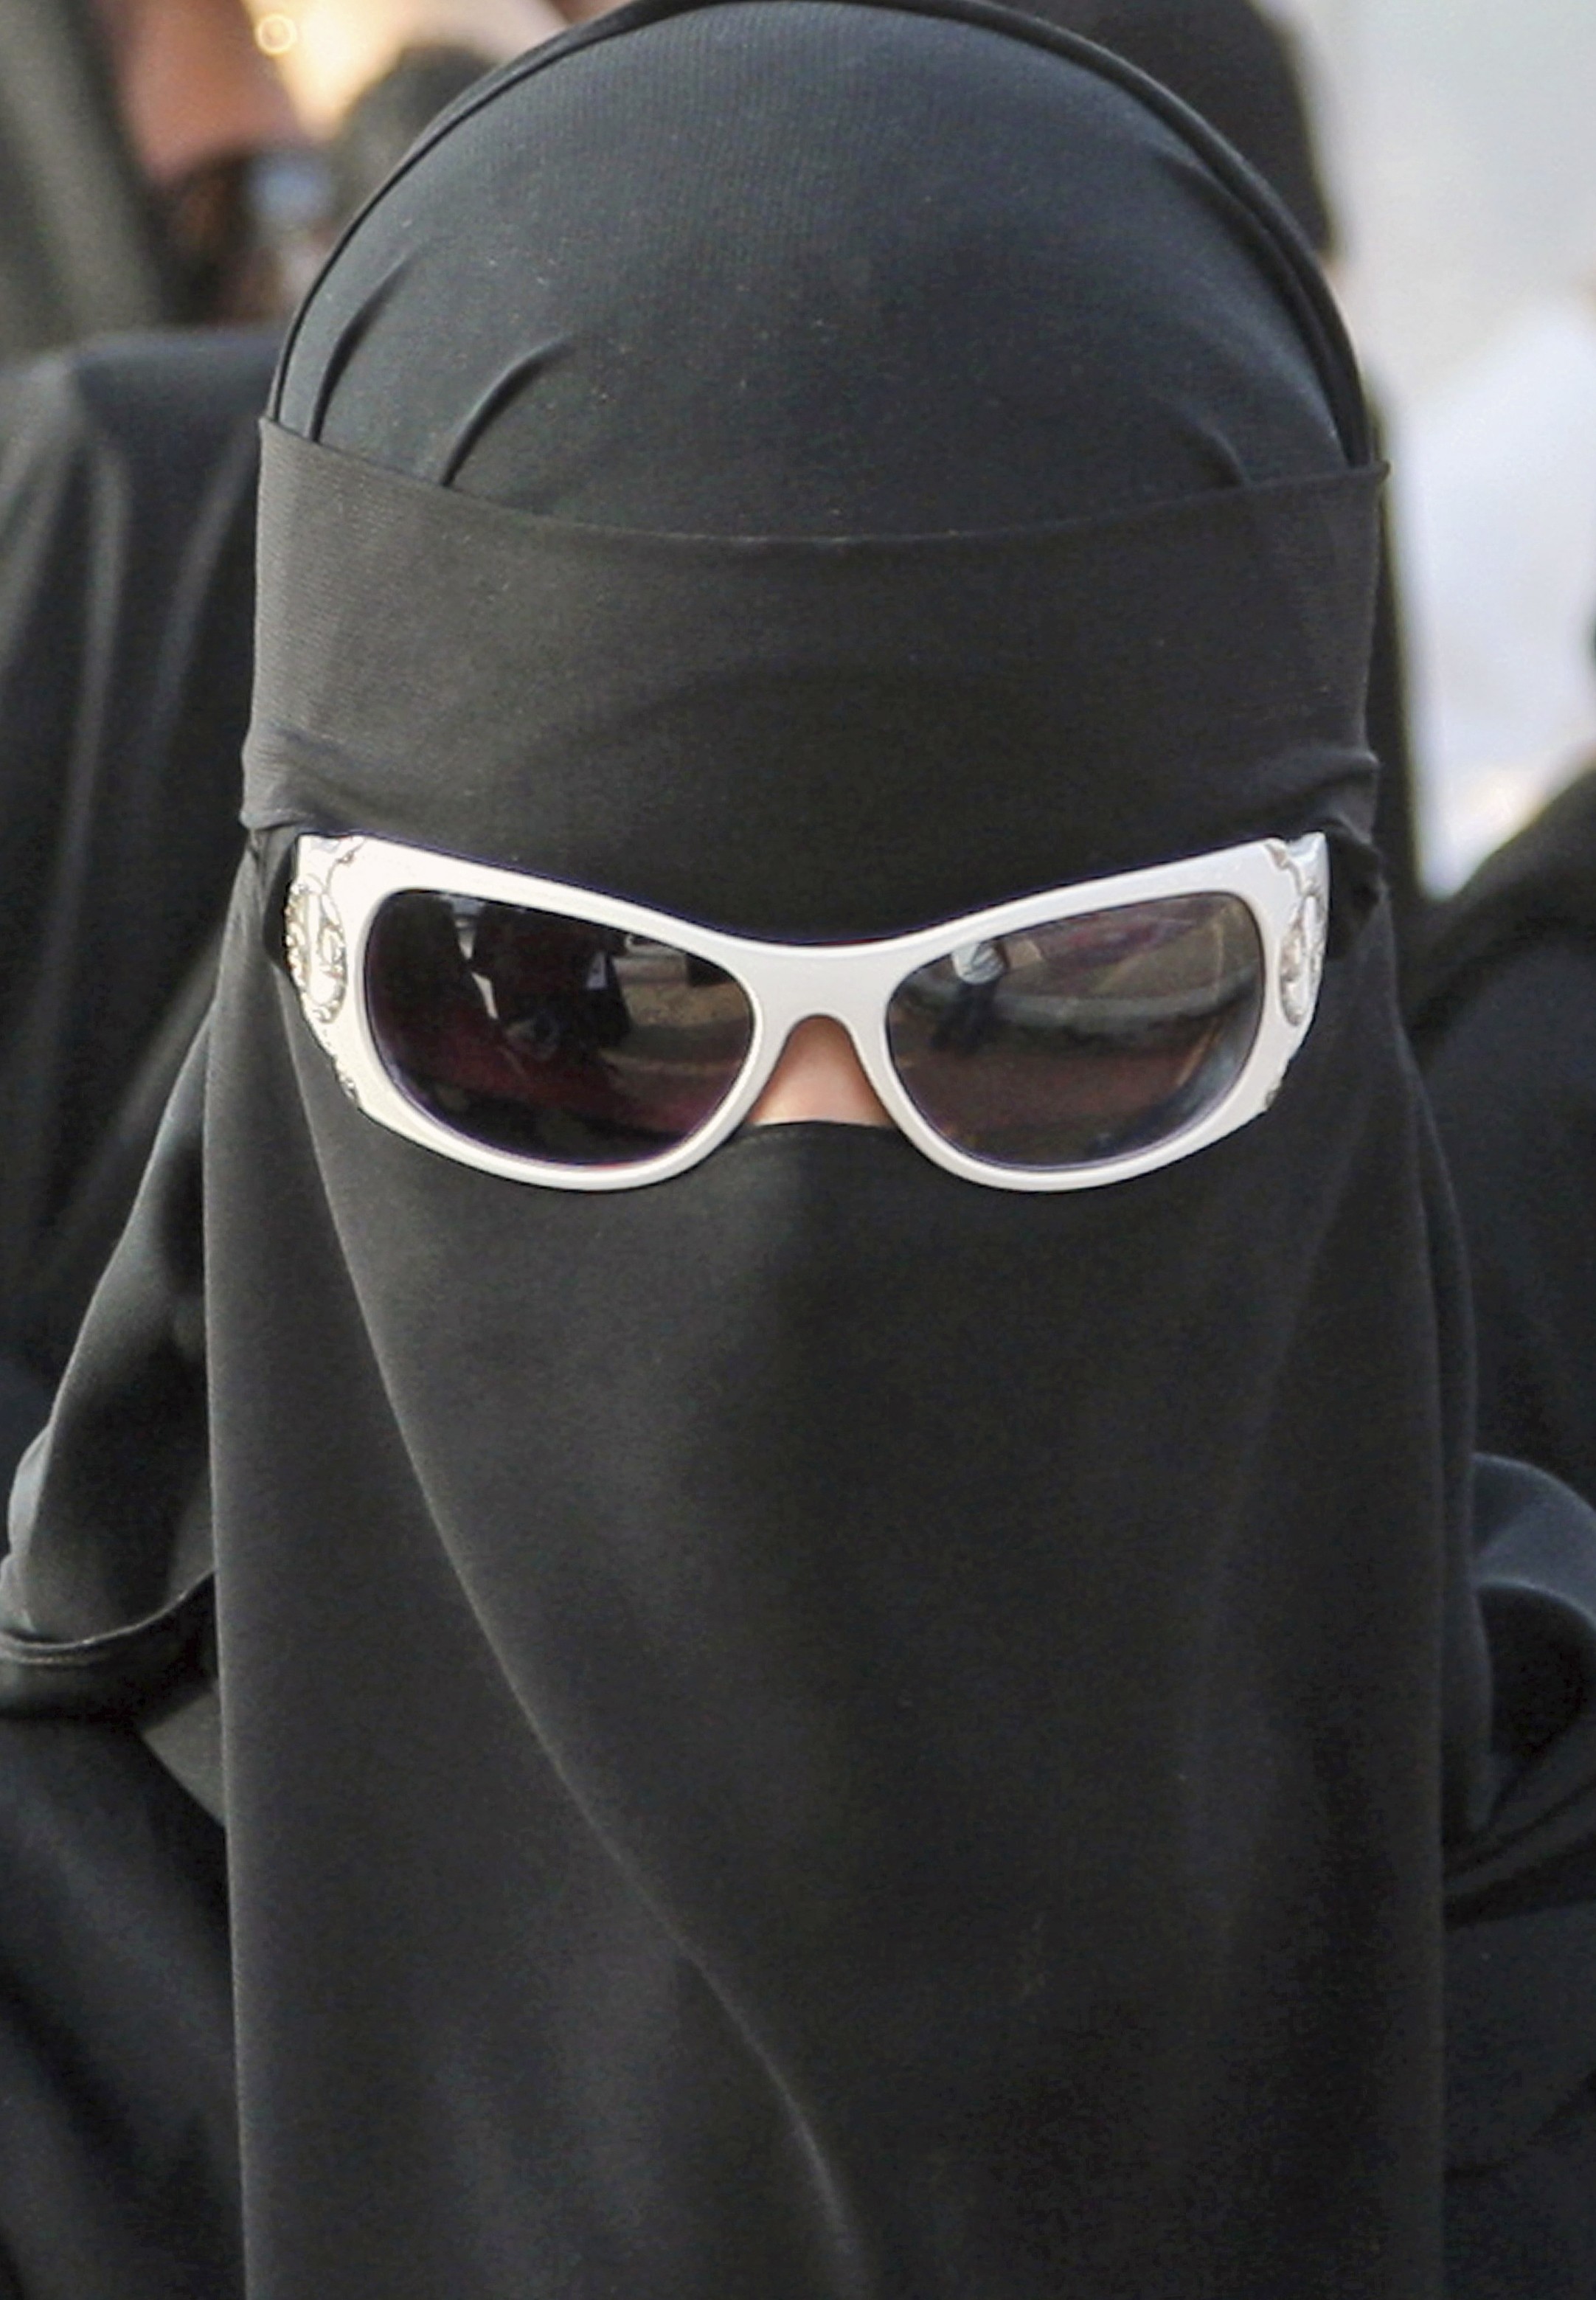 Ава араба. Никаб Саудовской Аравии. Никаб бурка маска. Никаб на аву. Арабские женщины в парандже.